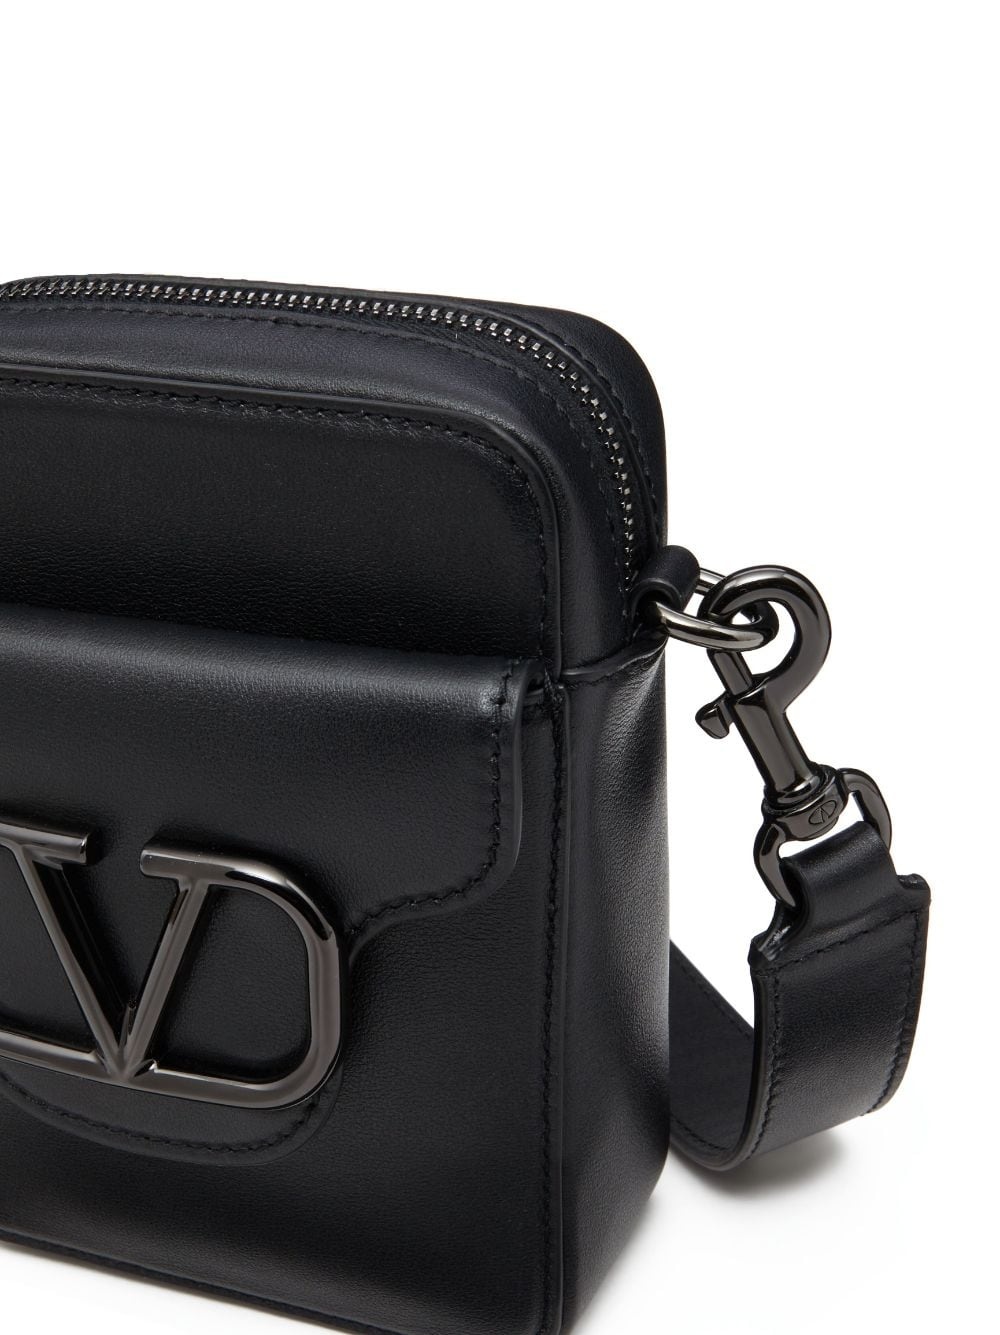 VLogo leather shoulder bag - 6